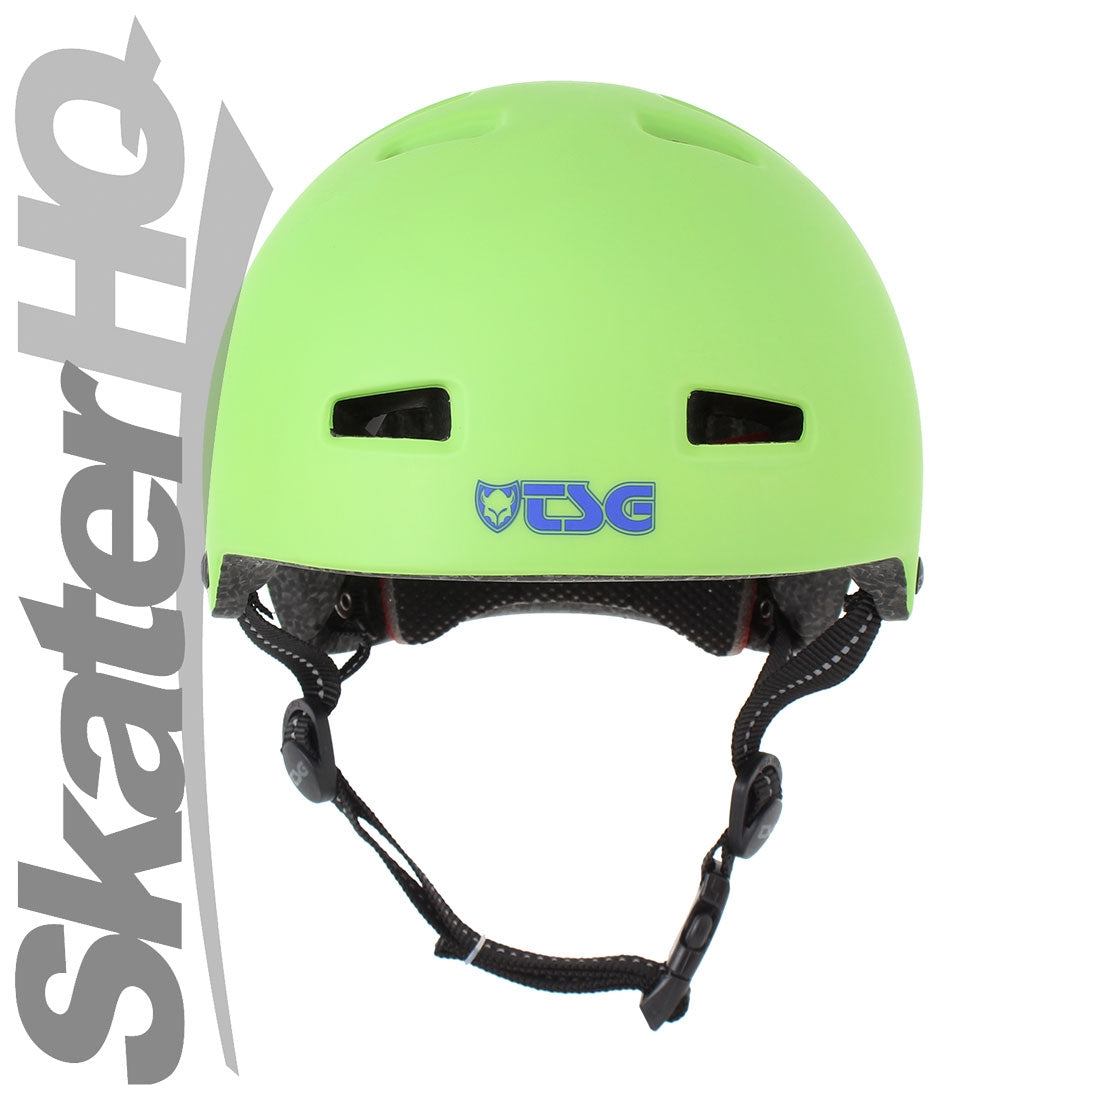 TSG Nipper Maxi Satin Green XS 54cm Helmets